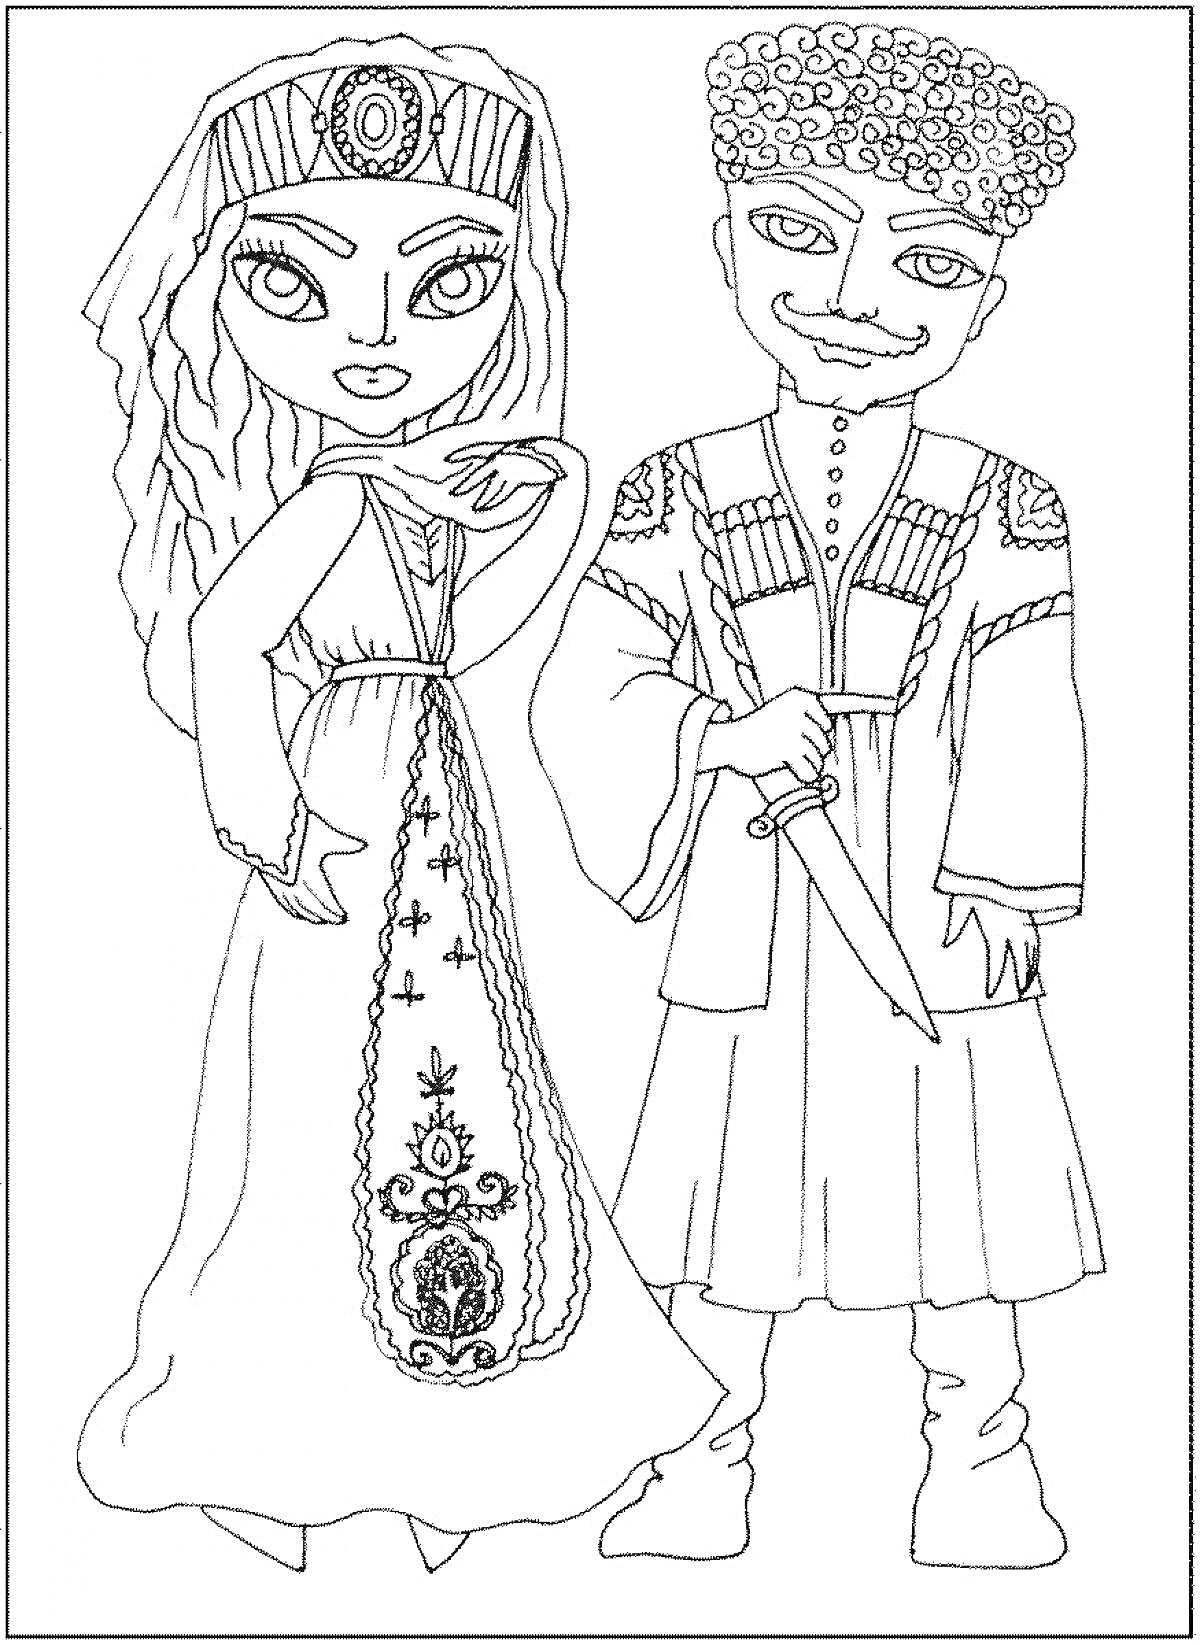 Дети в традиционных кавказских костюмах — девочка в длинном платье с орнаментом и венком на голове, мальчик в черкеске с кинжалом на поясе и папахе